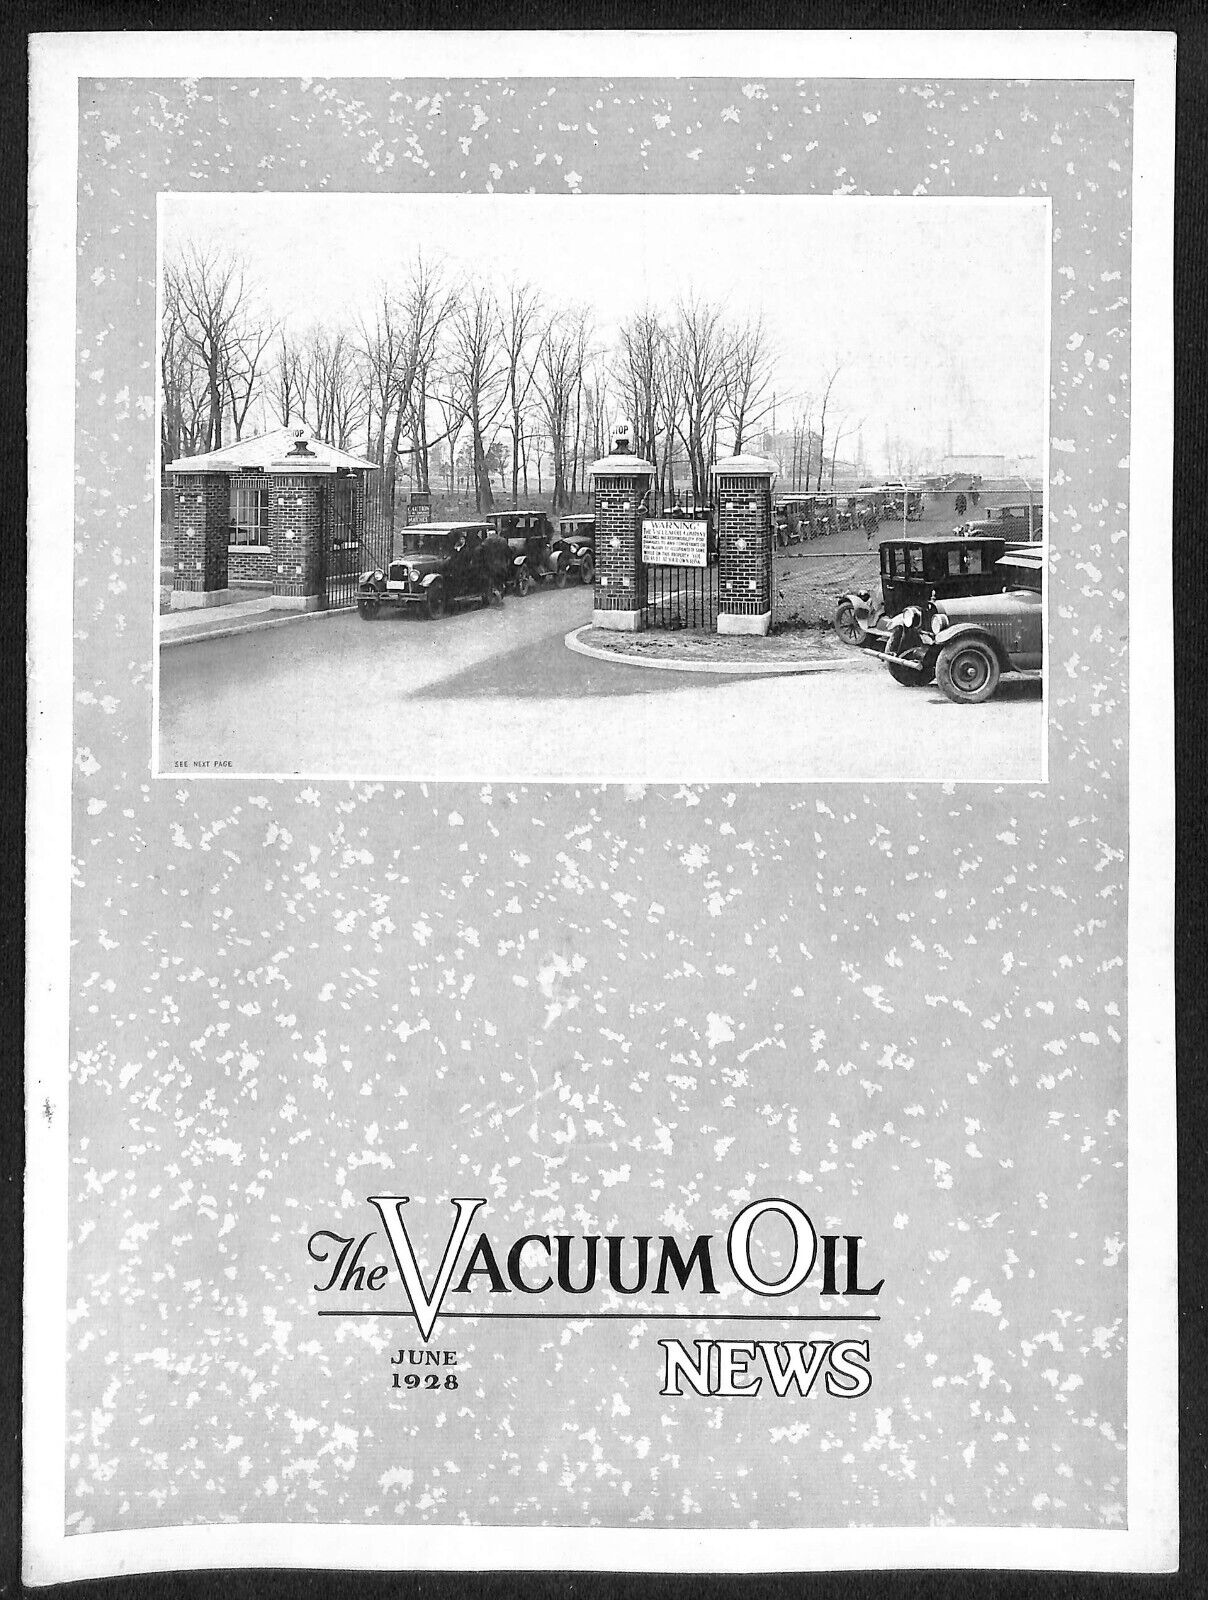 Vacuum Oil News Mobiloil Mobil Oil Gargoyle June 1928 16pp. Scarce VGC